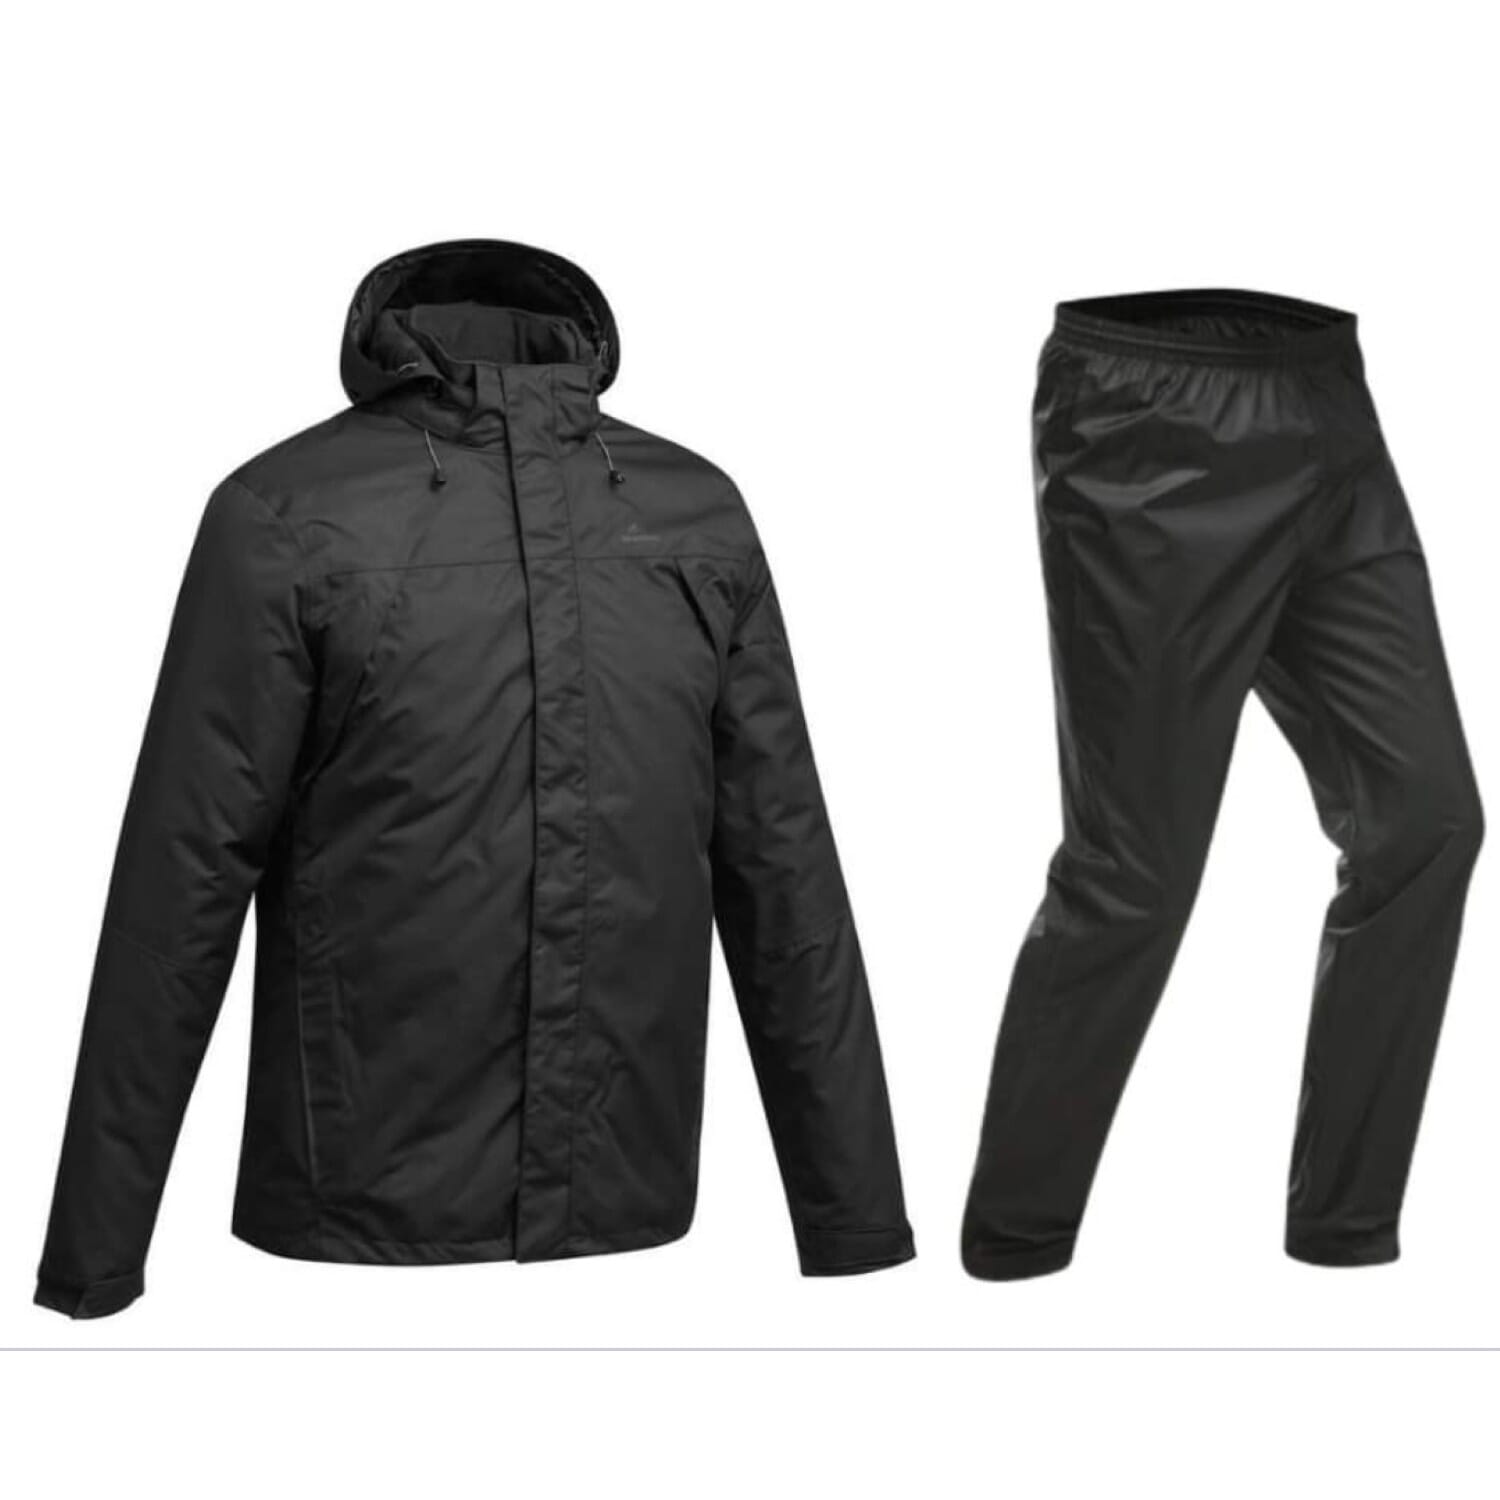 Buy Men's Jackets & Coats in Nepal Online at Best Price - Daraz.com.np